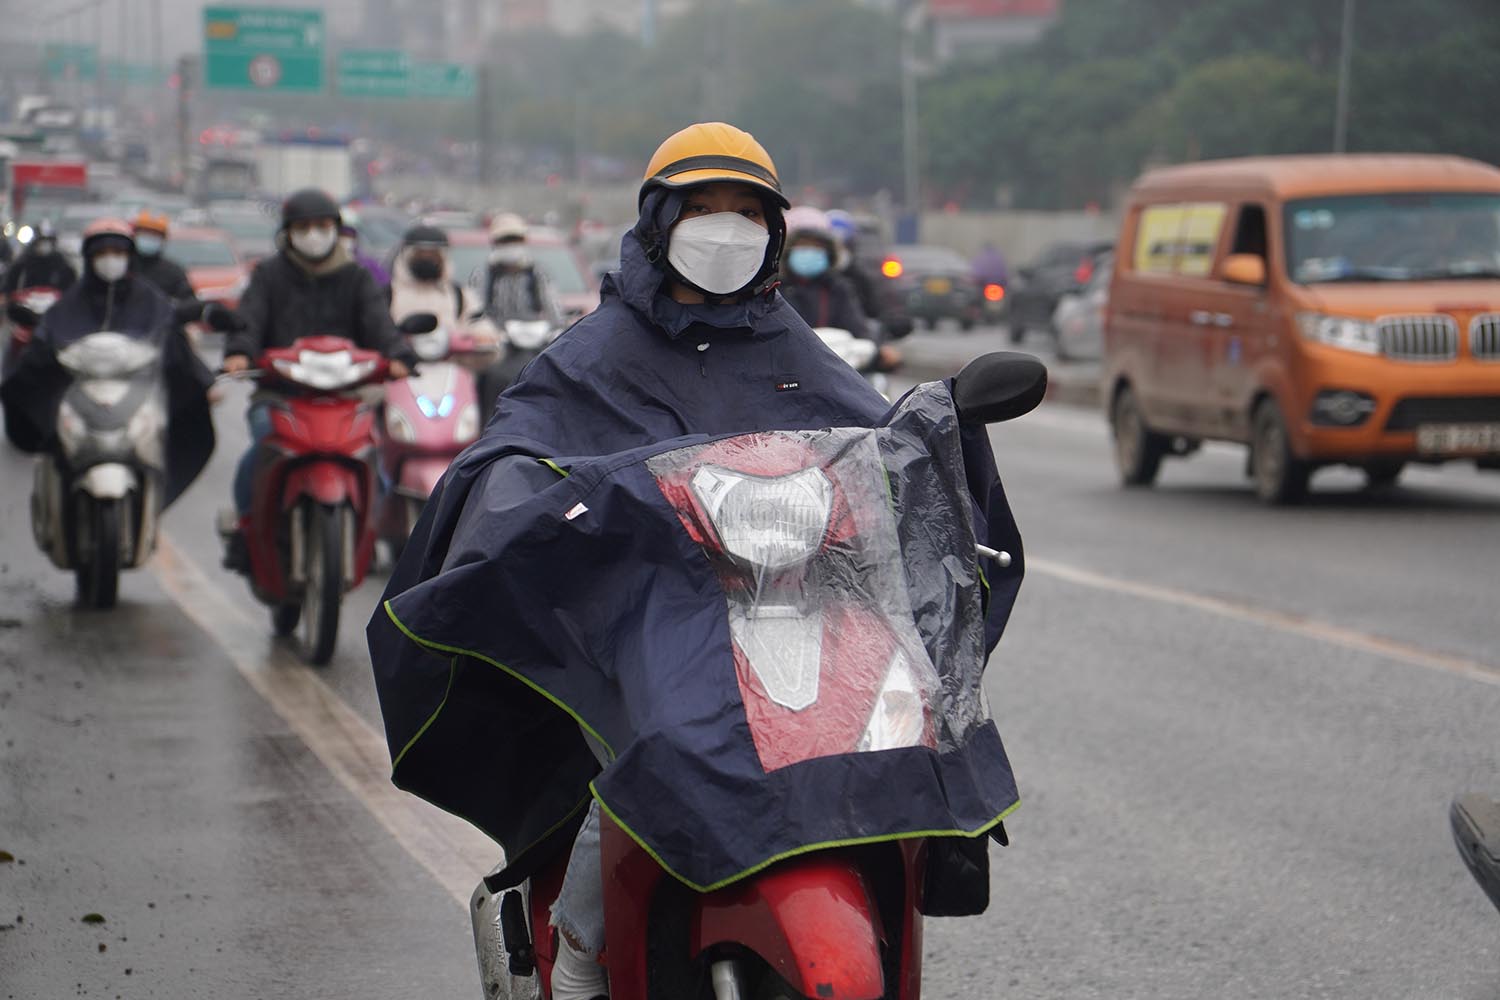 Thời tiết mưa kèm theo sương mù khiến tầm nhìn hạn chế, người dân gặp nhiều khó khăn khi tham gia giao thông.